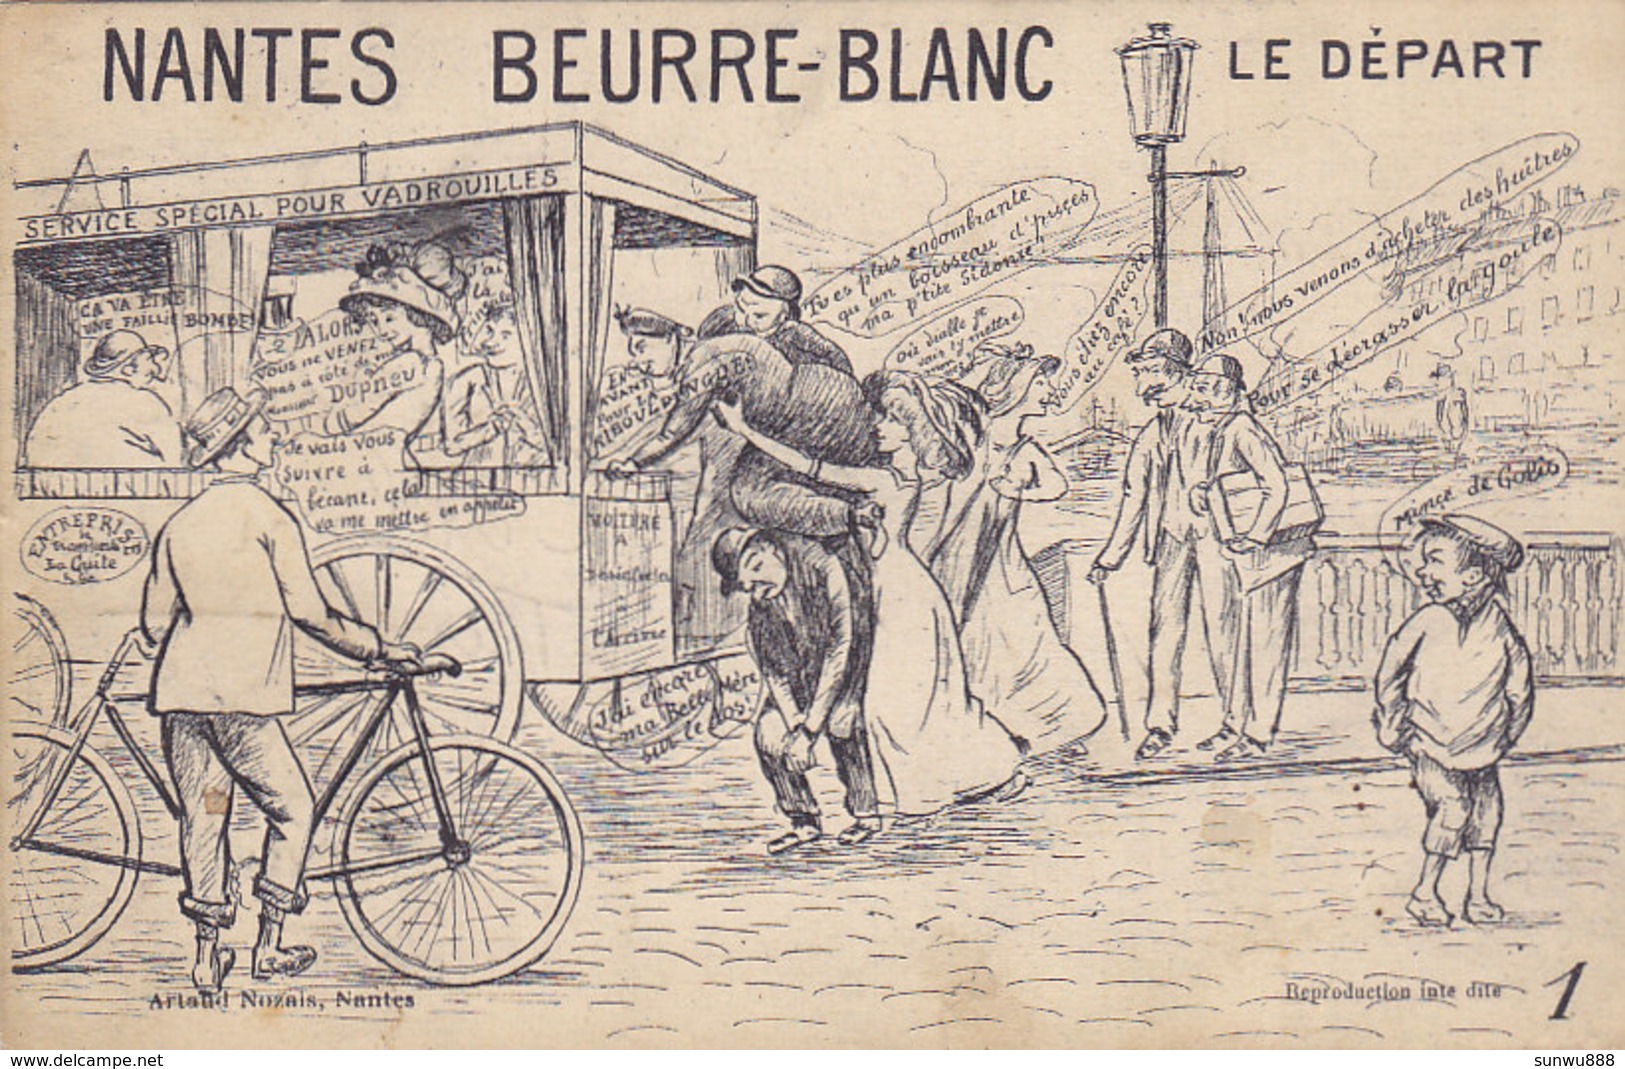 Nantes Beurre-Blanc - Le Départ (service Pour Vadrouilles) - Humour